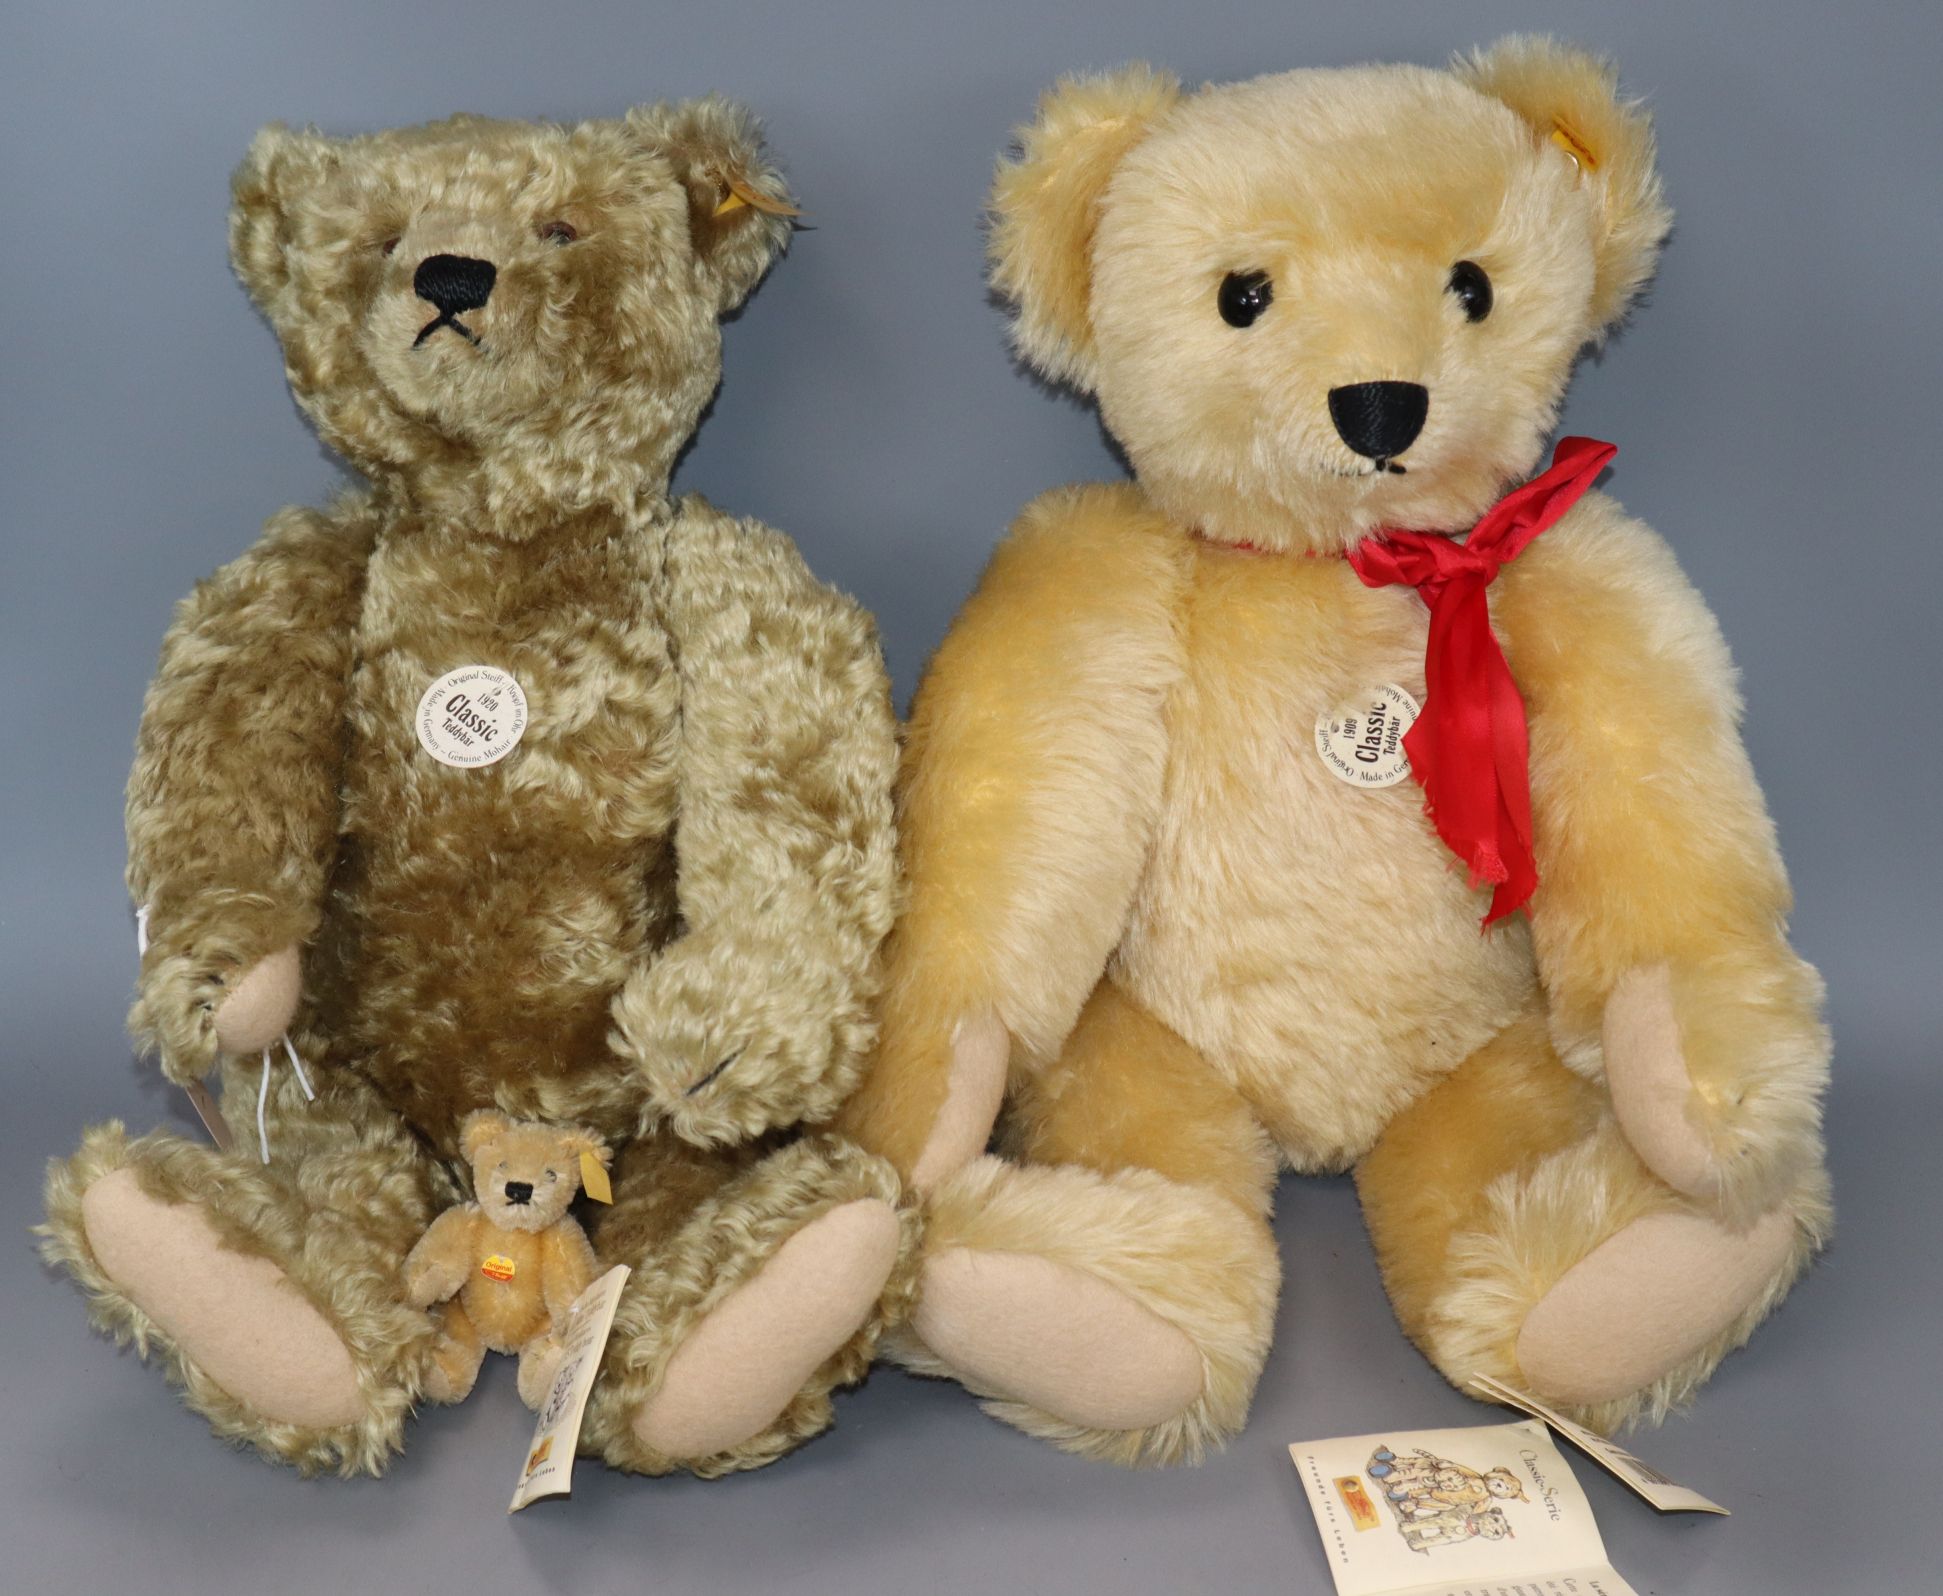 Two Steiff collector's bears and one Steiff mini bear